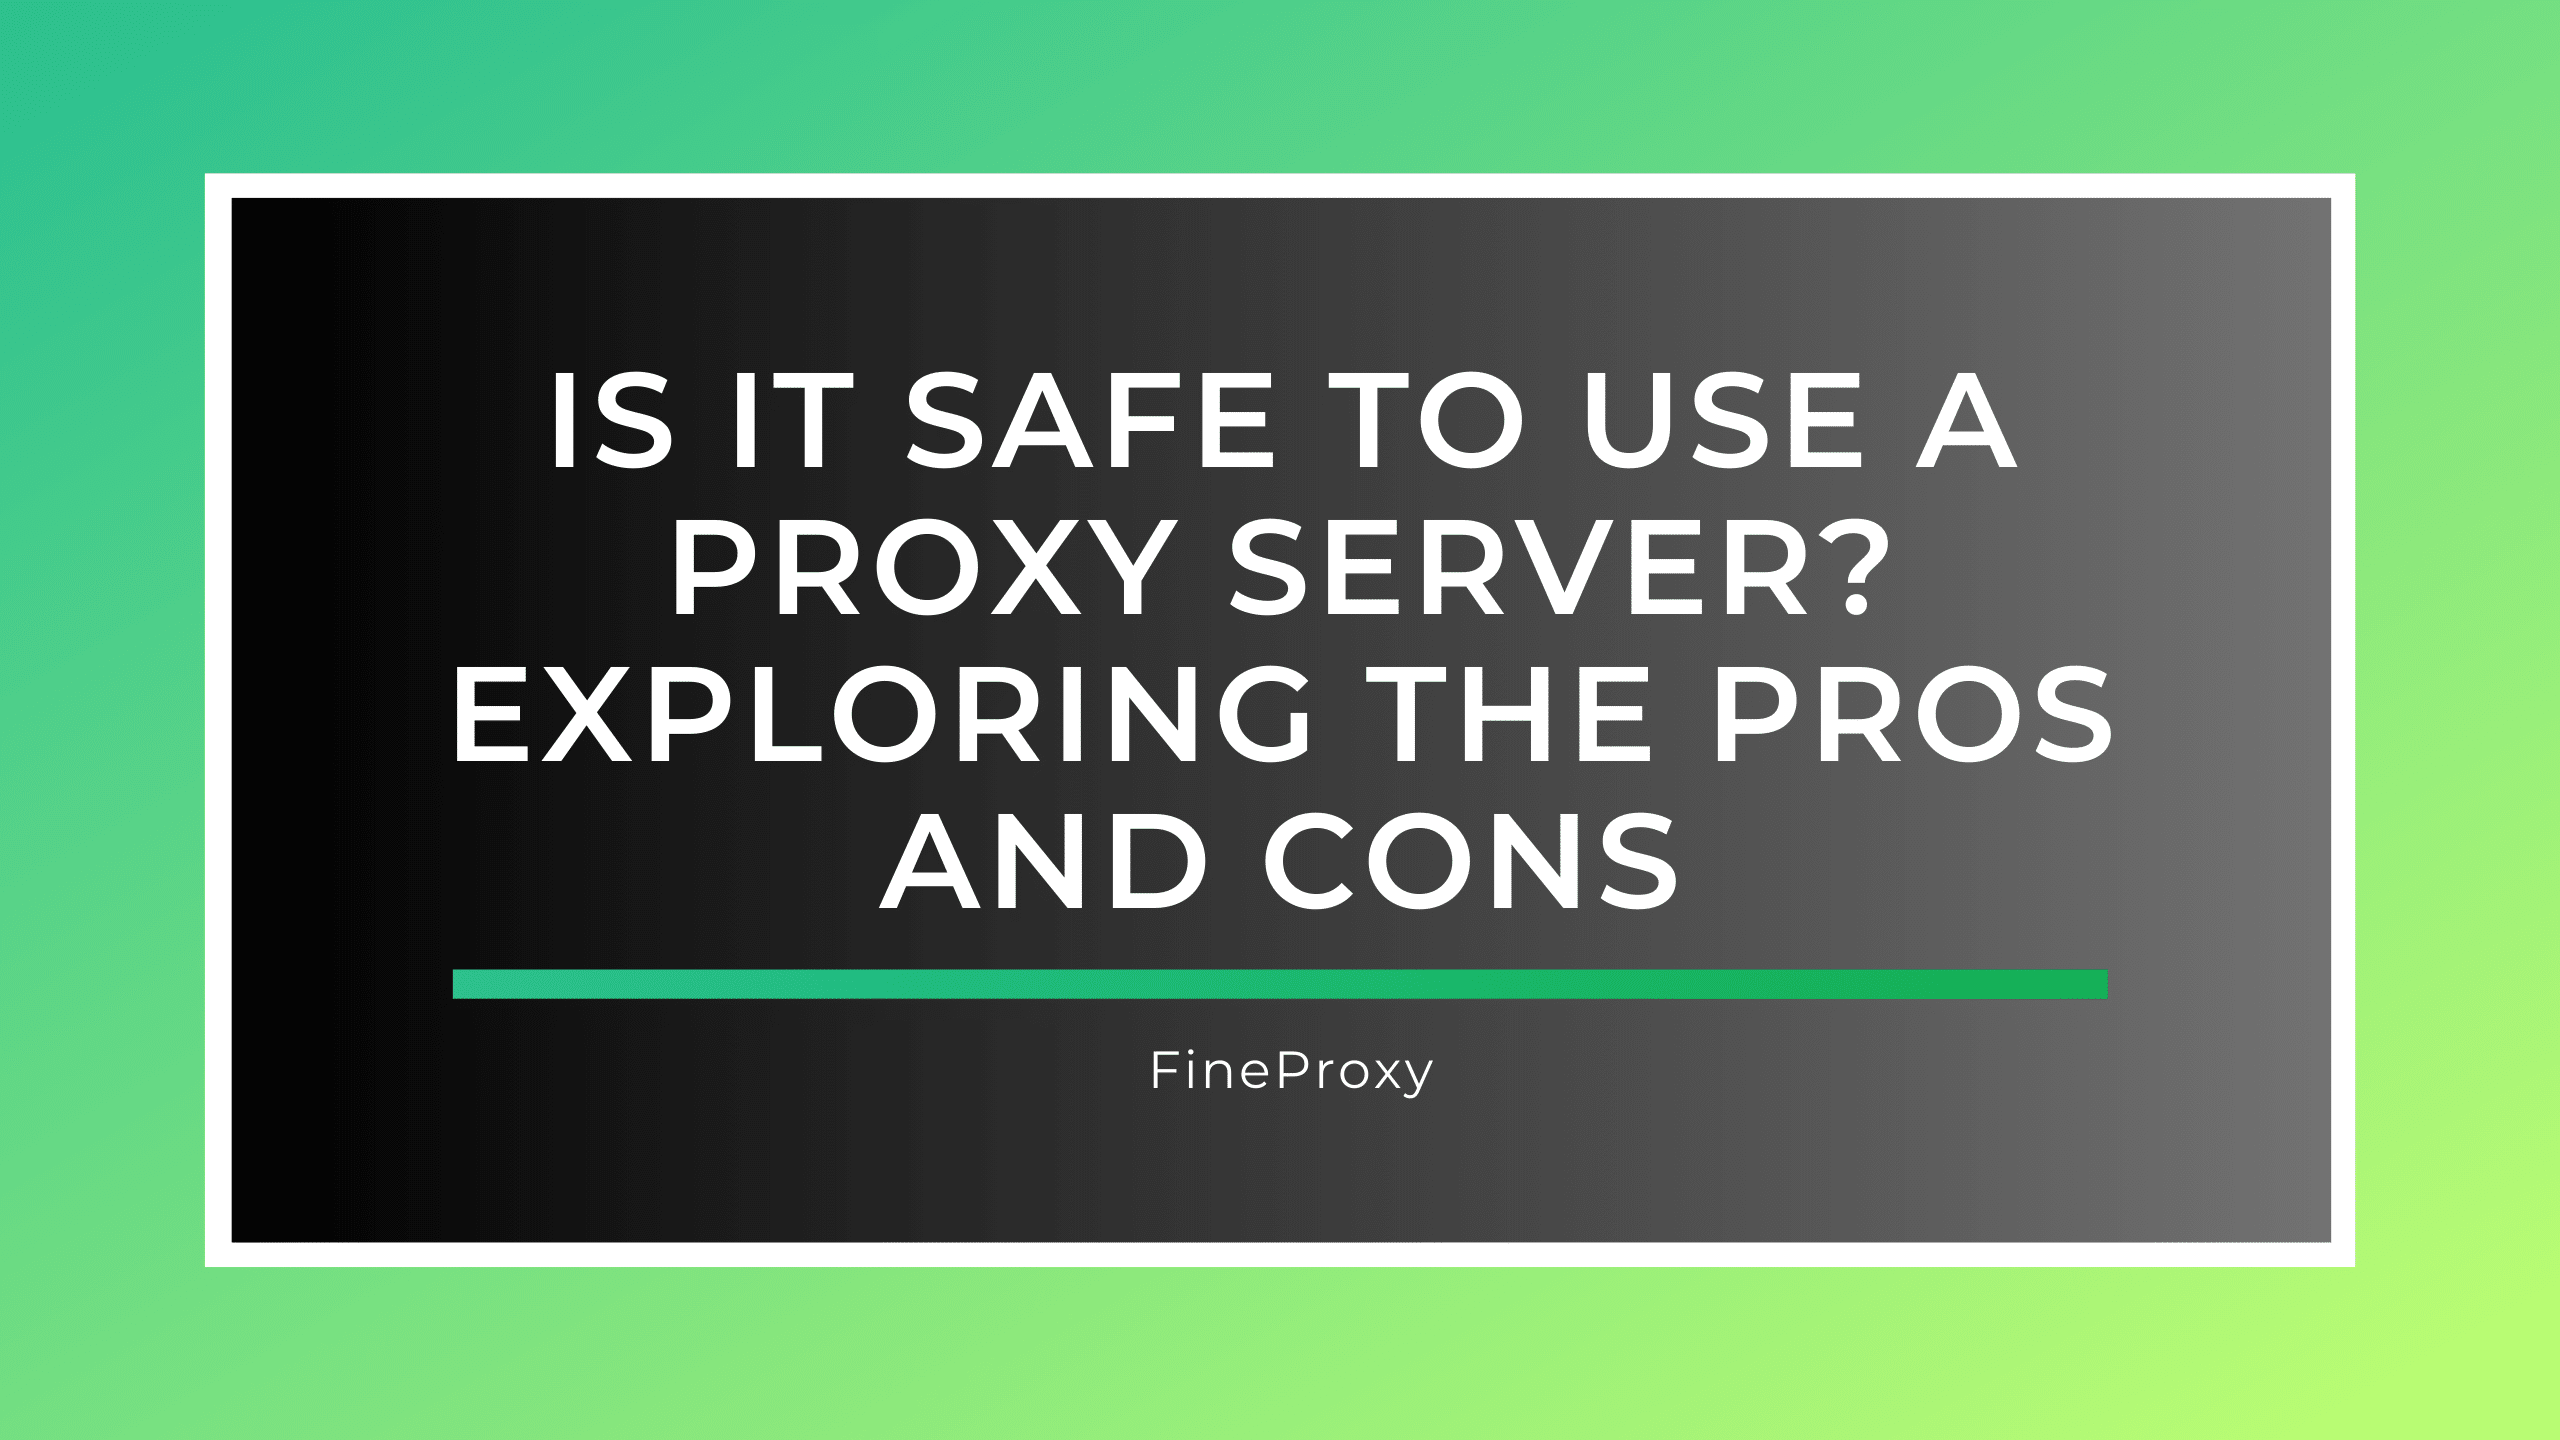 क्या प्रॉक्सी सर्वर का उपयोग करना सुरक्षित है? पेशेवरों और विपक्षों की खोज